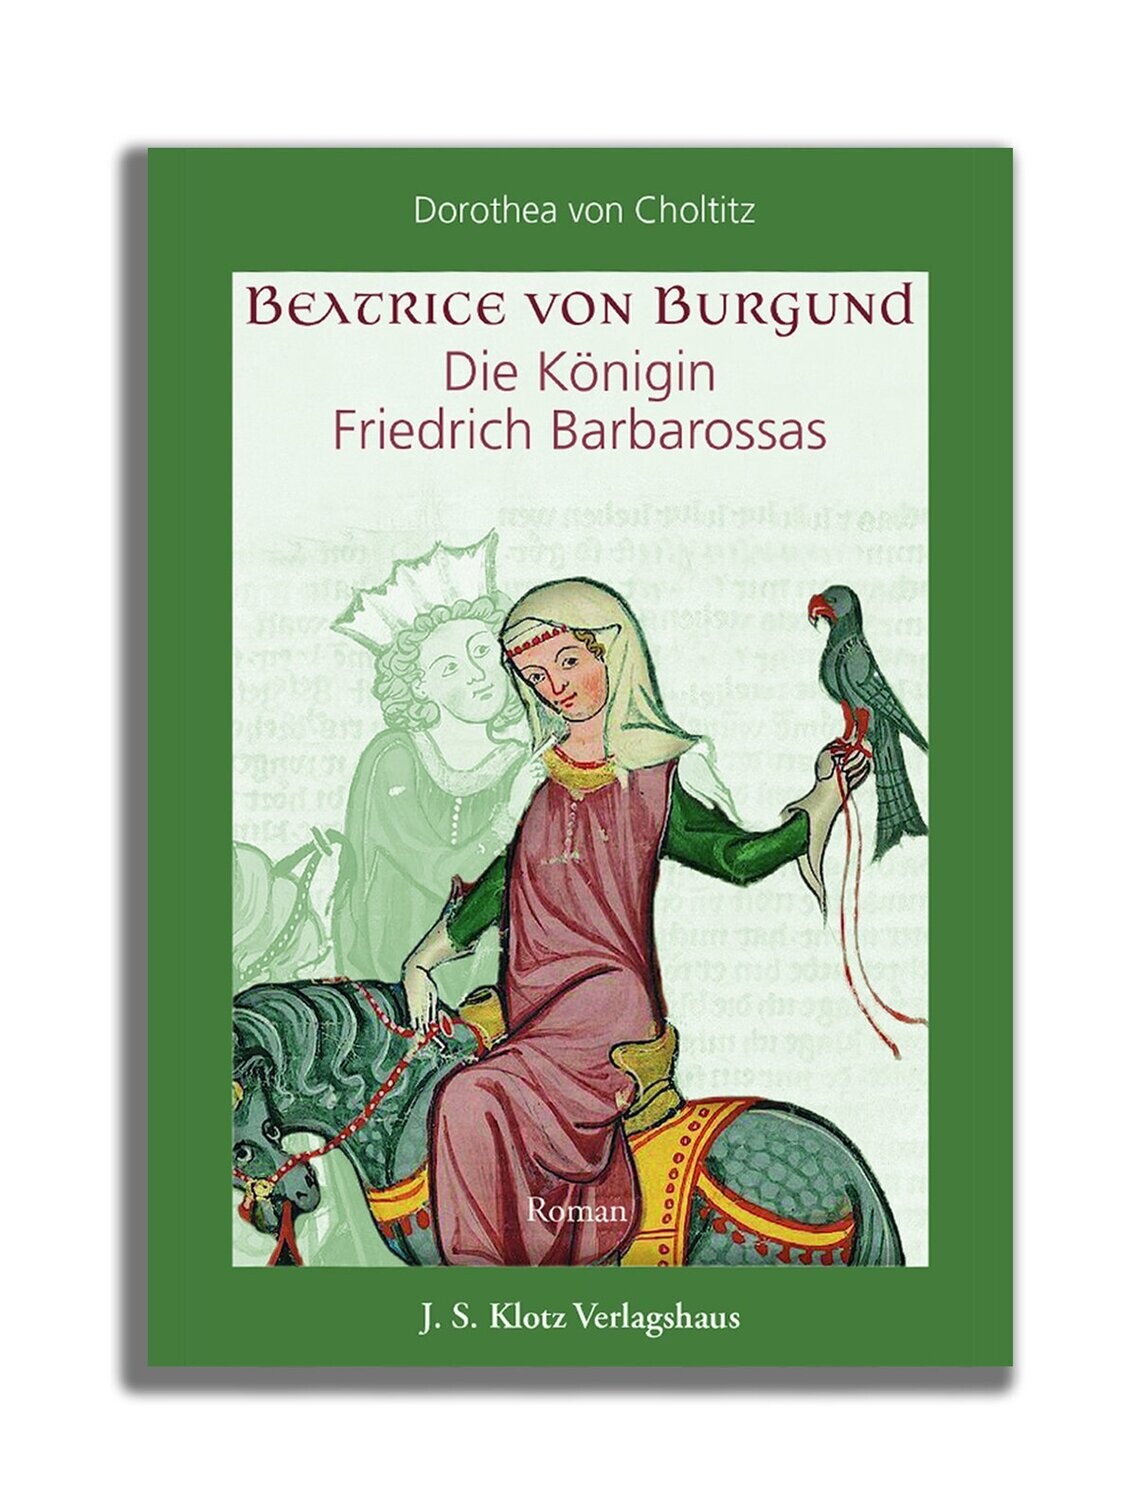 Beatrice von Burgund -
Die Königin Friedrich Barbarossas